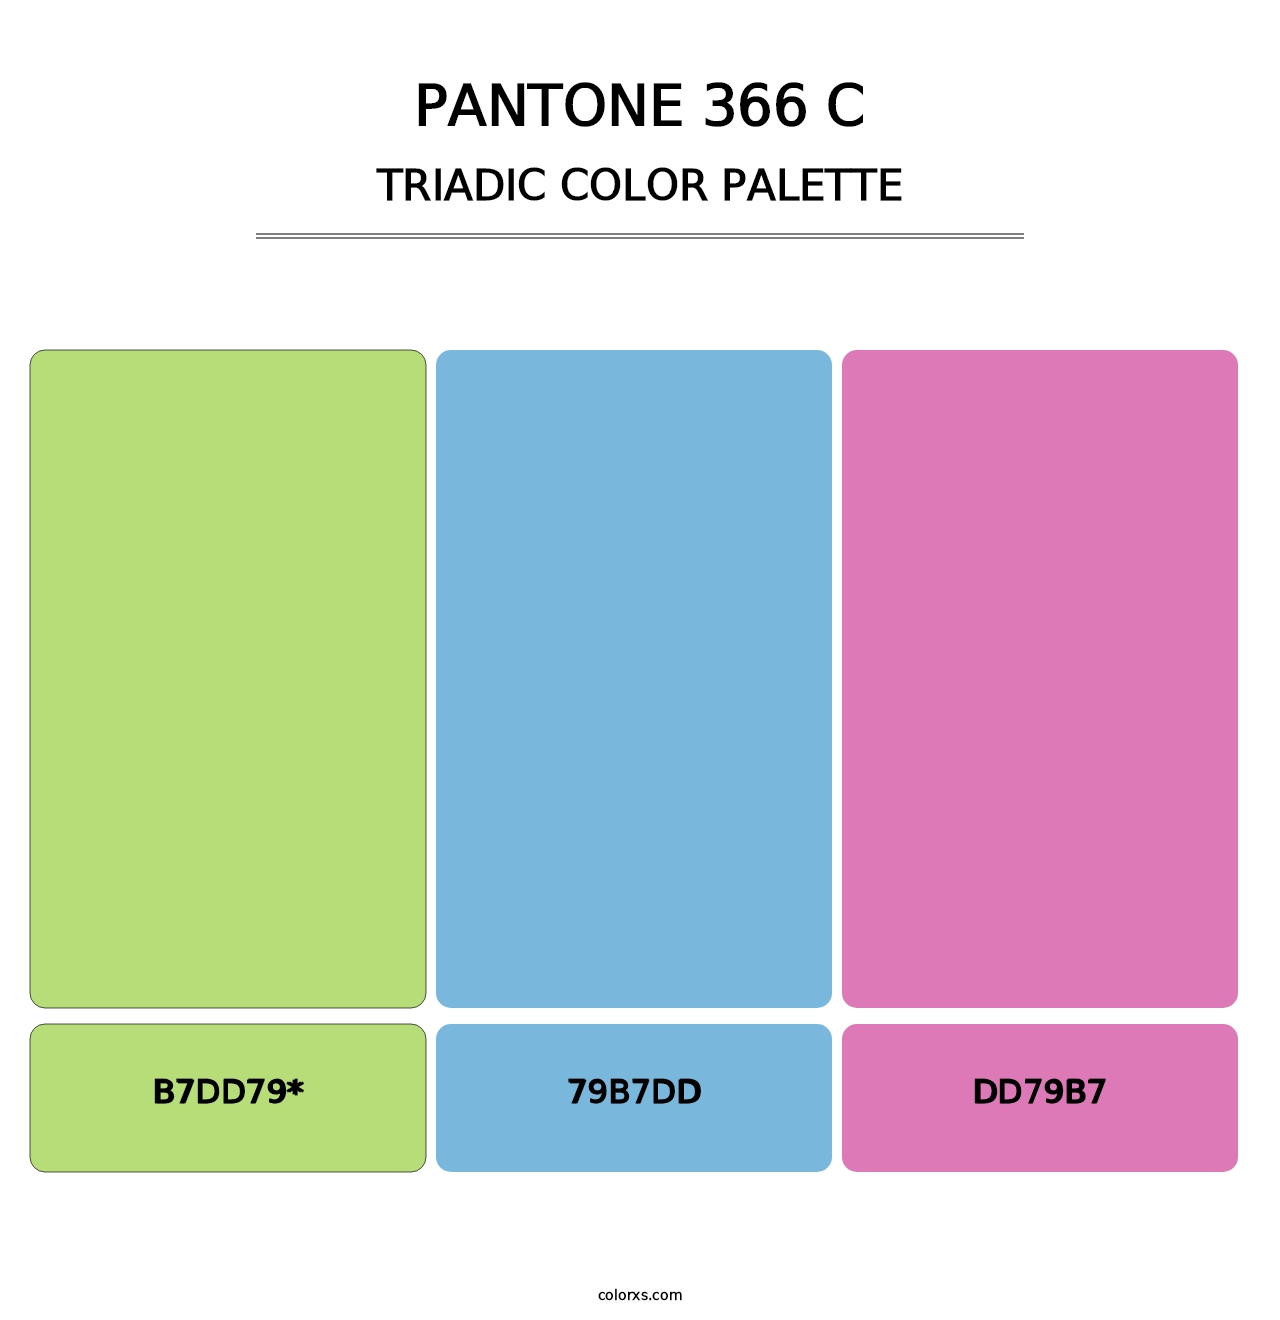 PANTONE 366 C - Triadic Color Palette